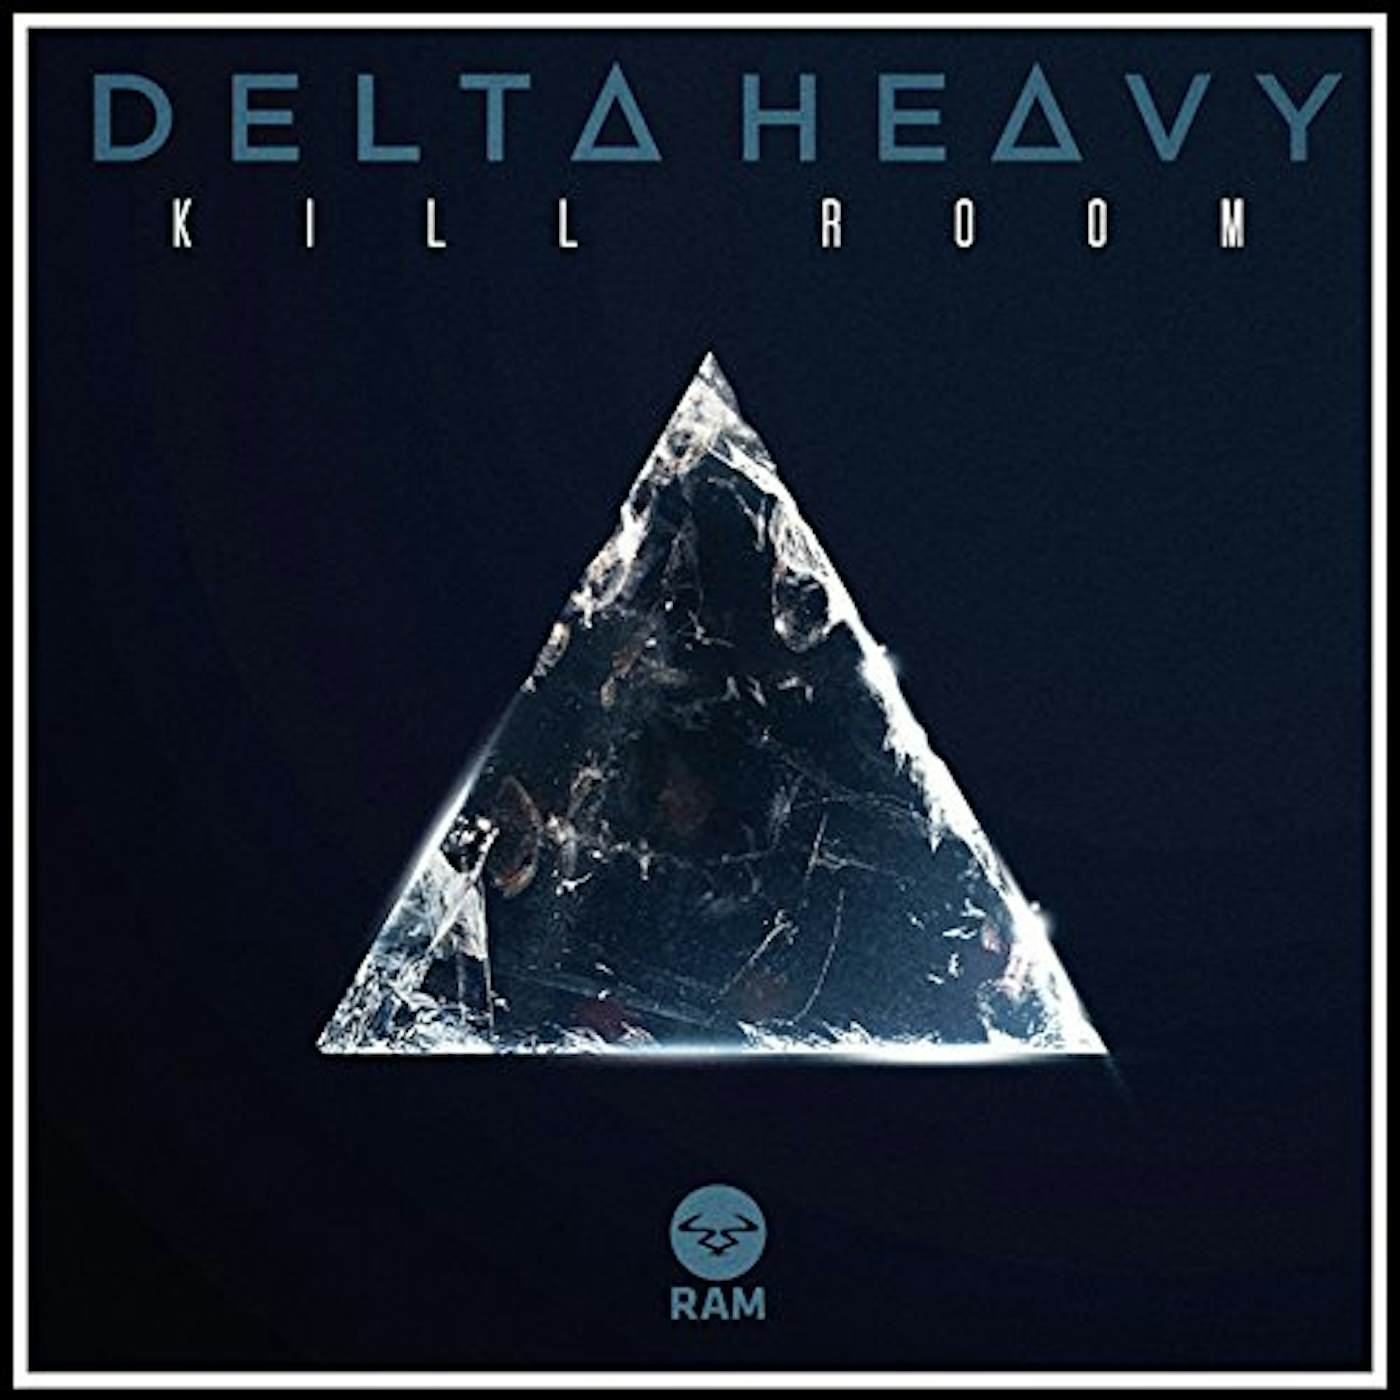 Delta Heavy Kill Room / Bar Fight Vinyl Record